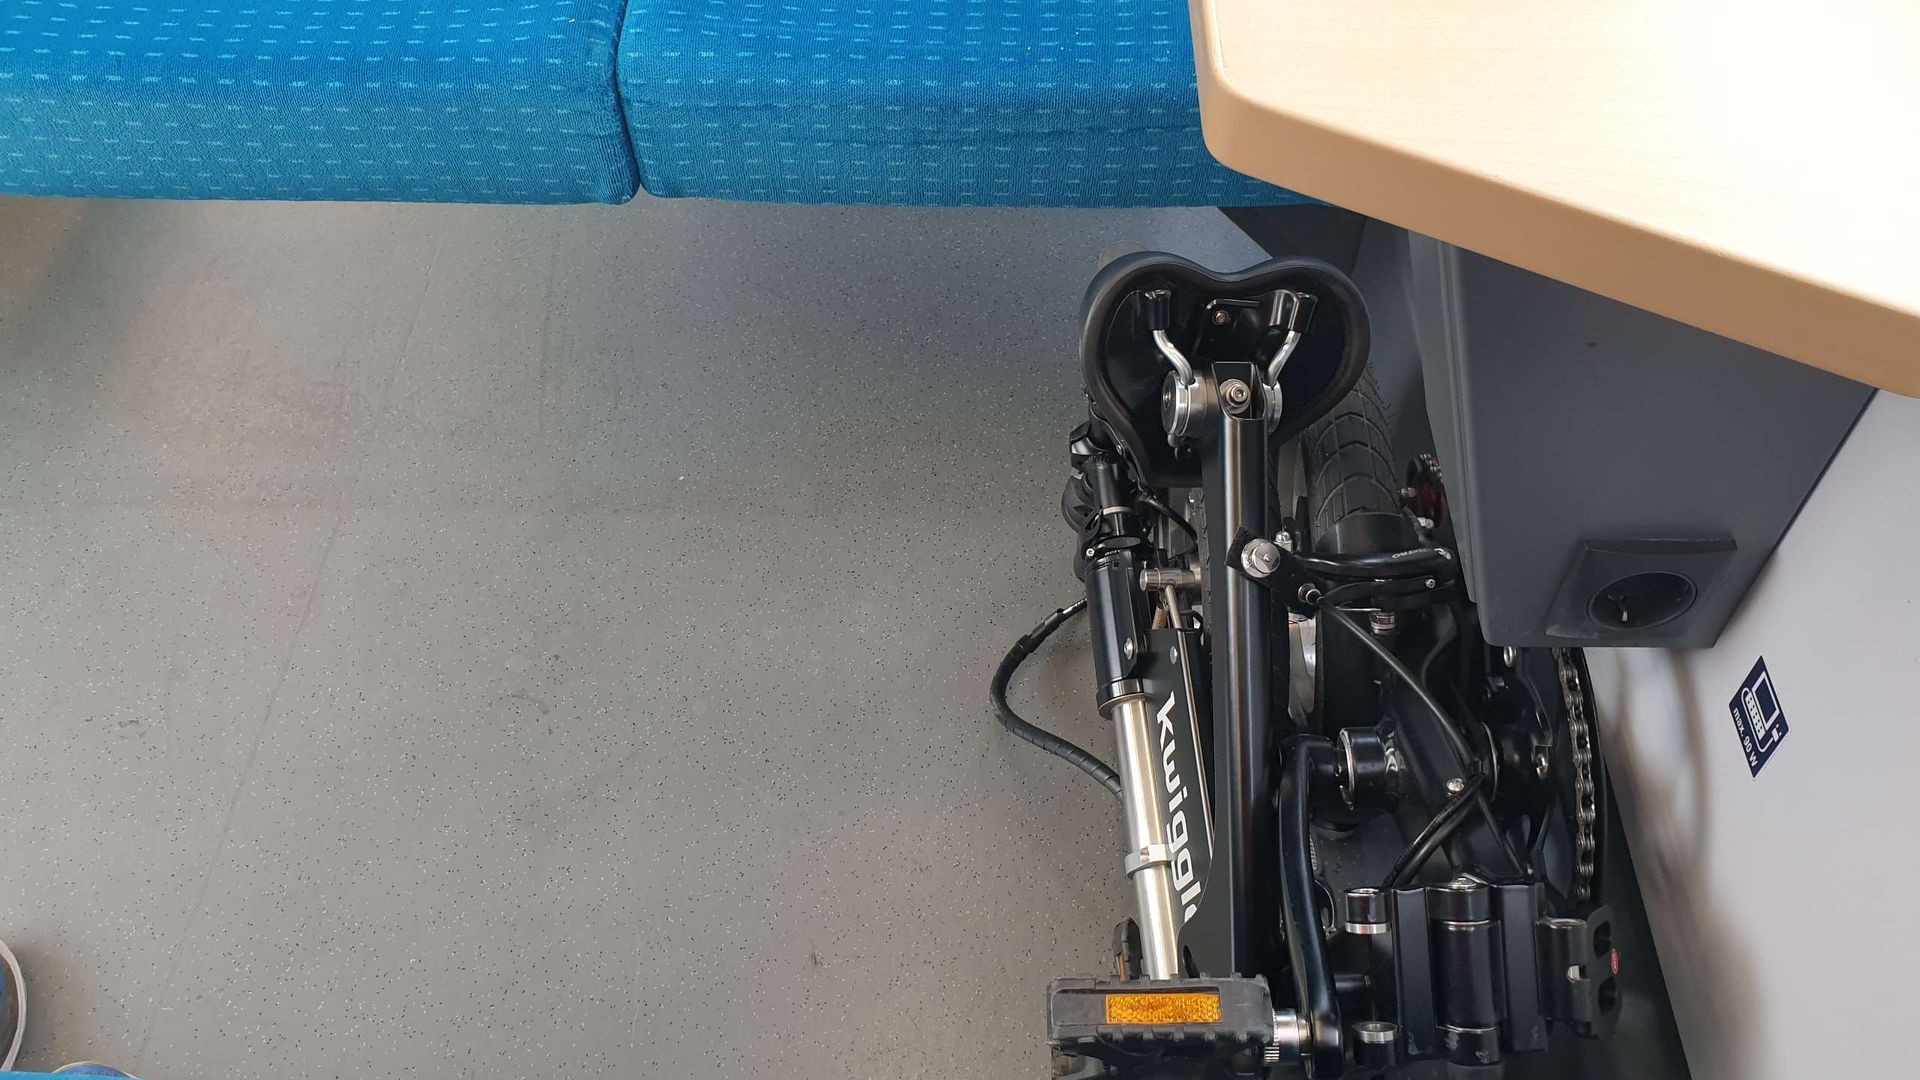 Bicicleta plegable-Kwiggle-en-el-espacio-del-asiento-grupo-del-tren